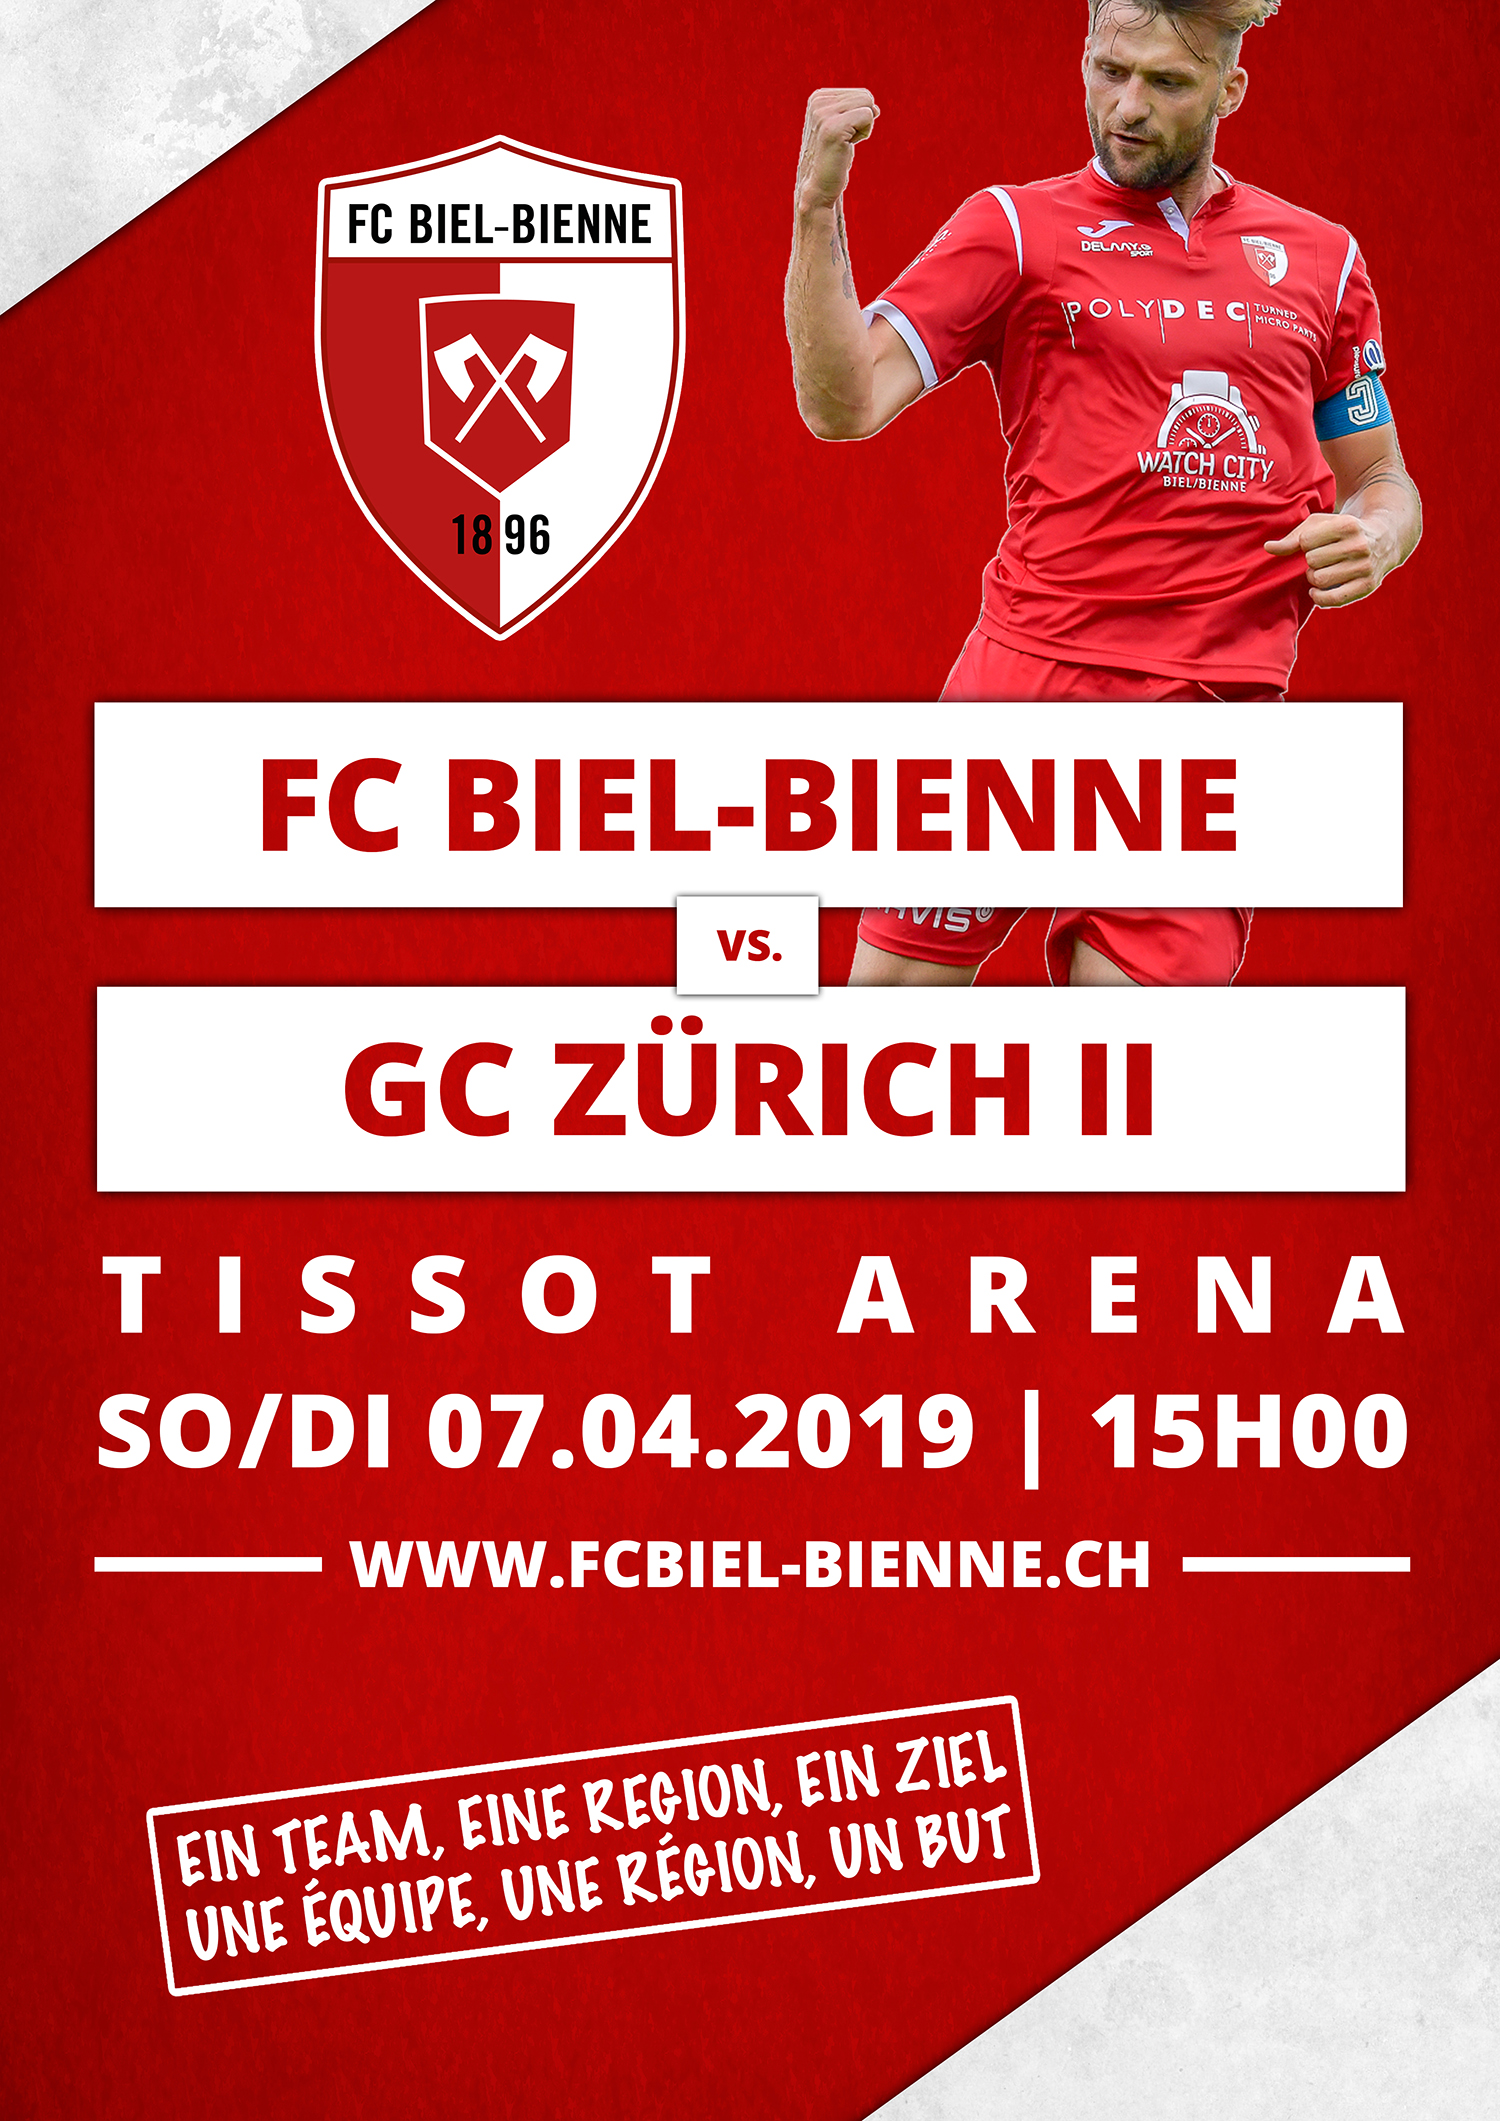 FC Biel-Bienne vs. GC Zürich II